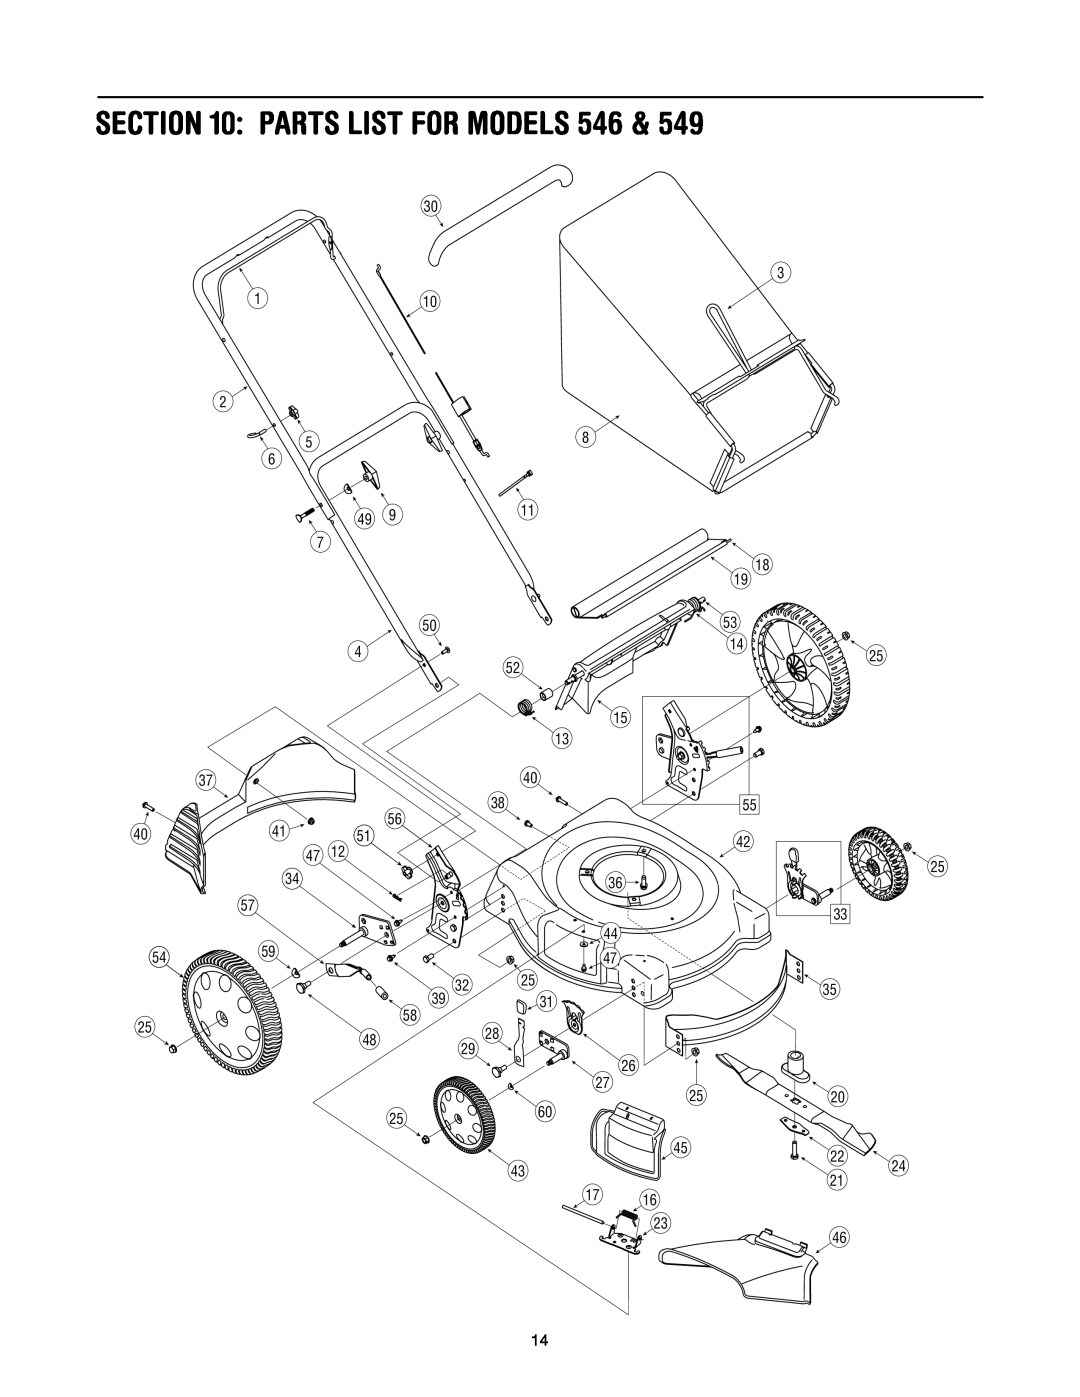 Troy-Bilt 546, 549 manual Parts List For Models 